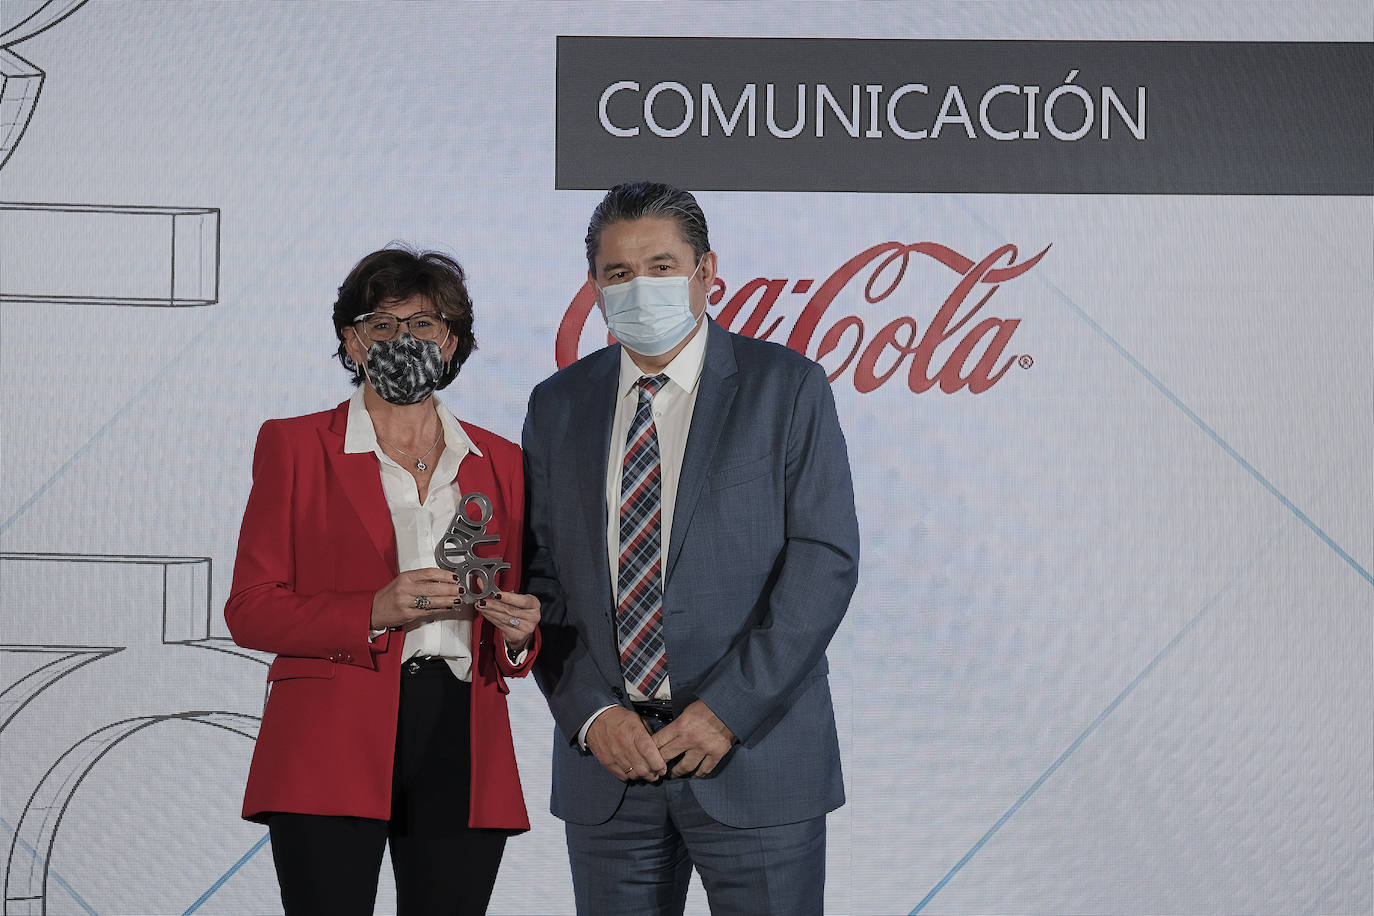 Óscar Campillo, director general de comunición y RRII de Vocento, entrega el premio a Sara Blázquez, directora de comunicación externa de Coca-Cola Iberia.